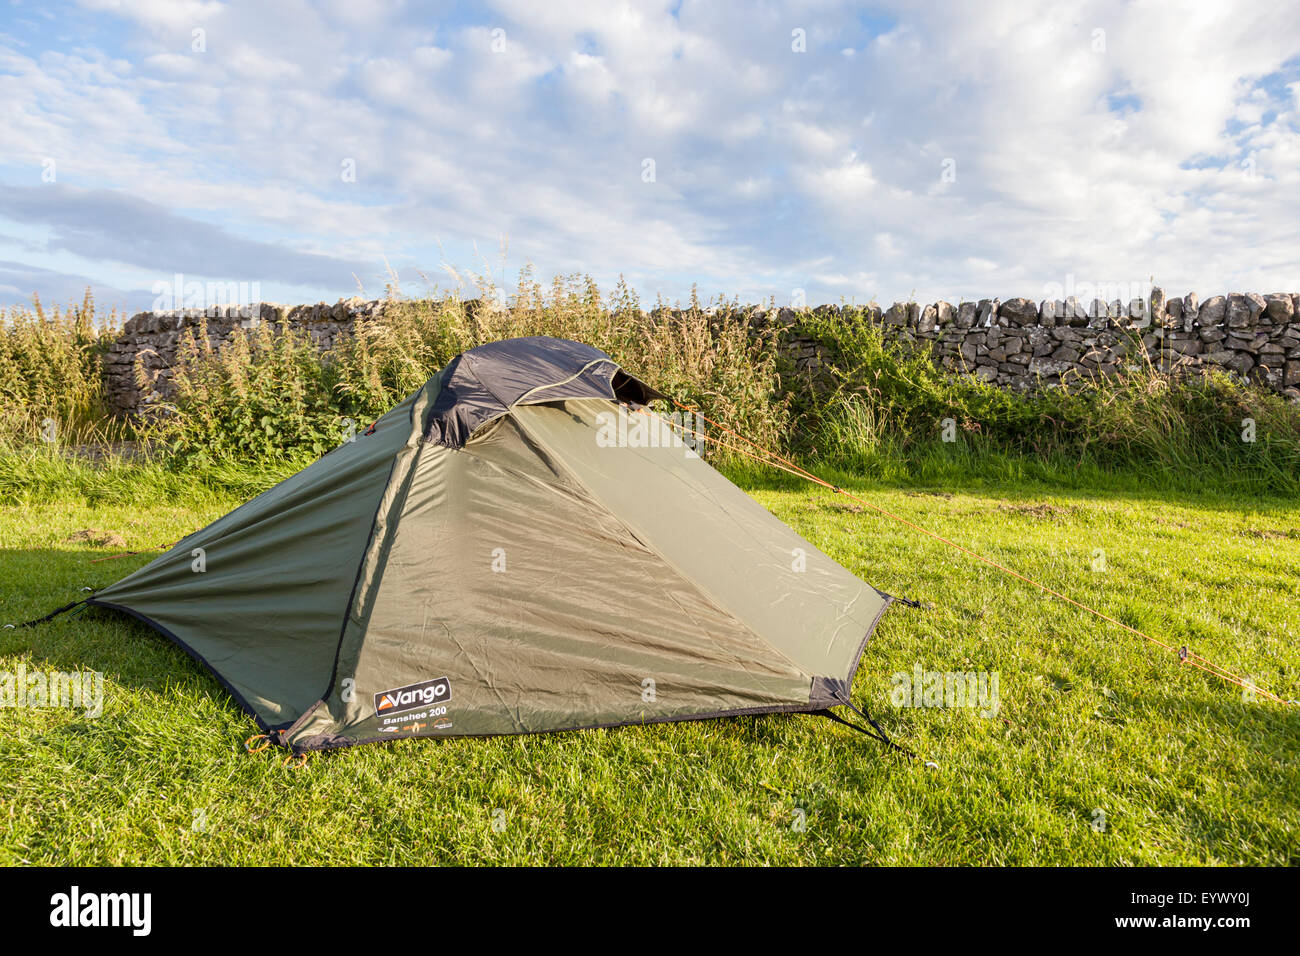 Piccola tenda. Il Vango Banshee 200 due persona tenda in un campeggio, Derbyshire, England, Regno Unito Foto Stock